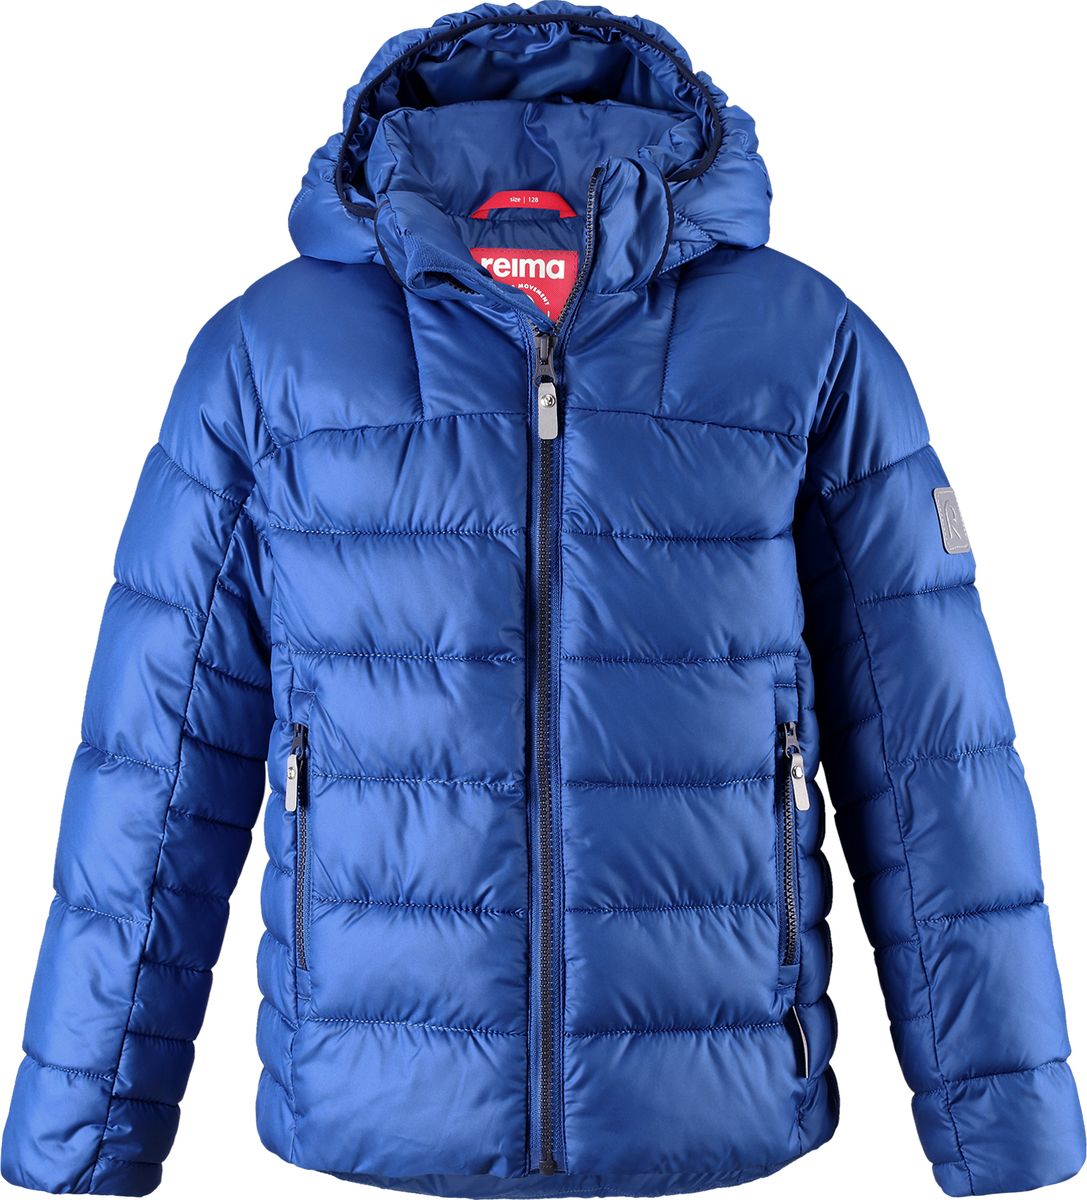 Куртка для мальчика Reima Petteri, цвет: синий. 5313436680. Размер 116